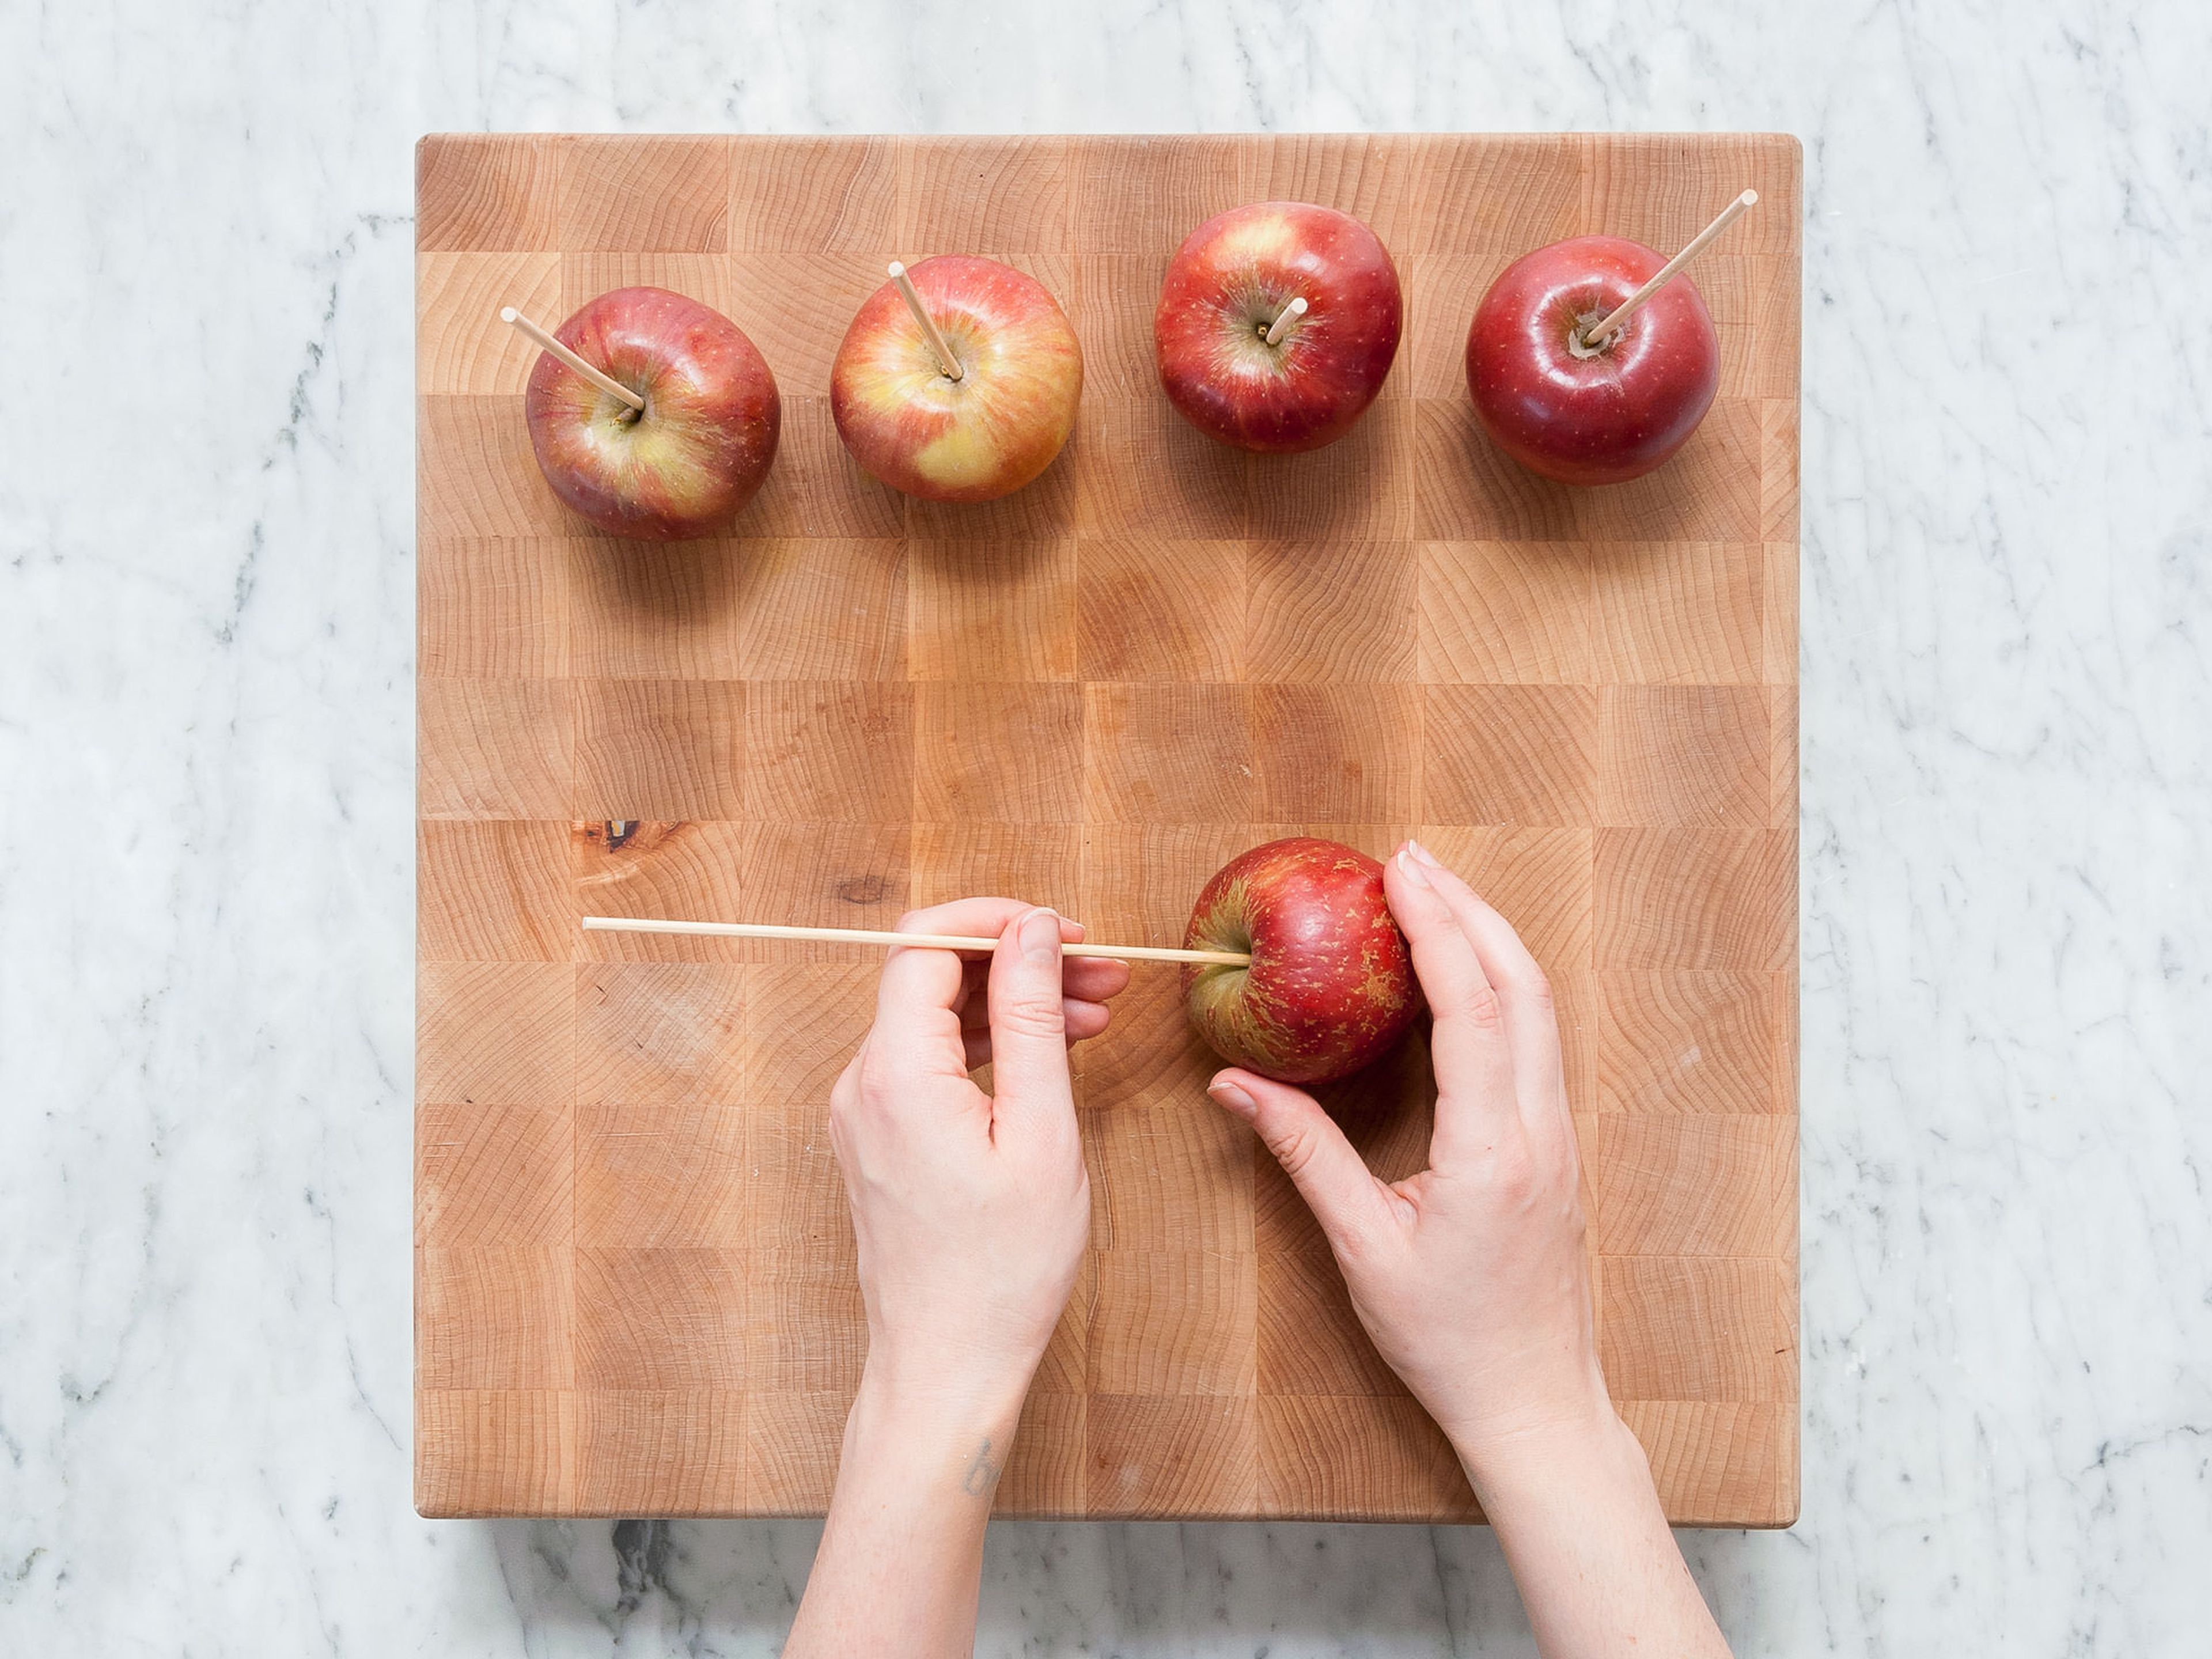 Äpfel waschen und den Stiel entfernen. Je einen Holzspieß in das Stielende eines Apfels stechen. Beiseitestellen.